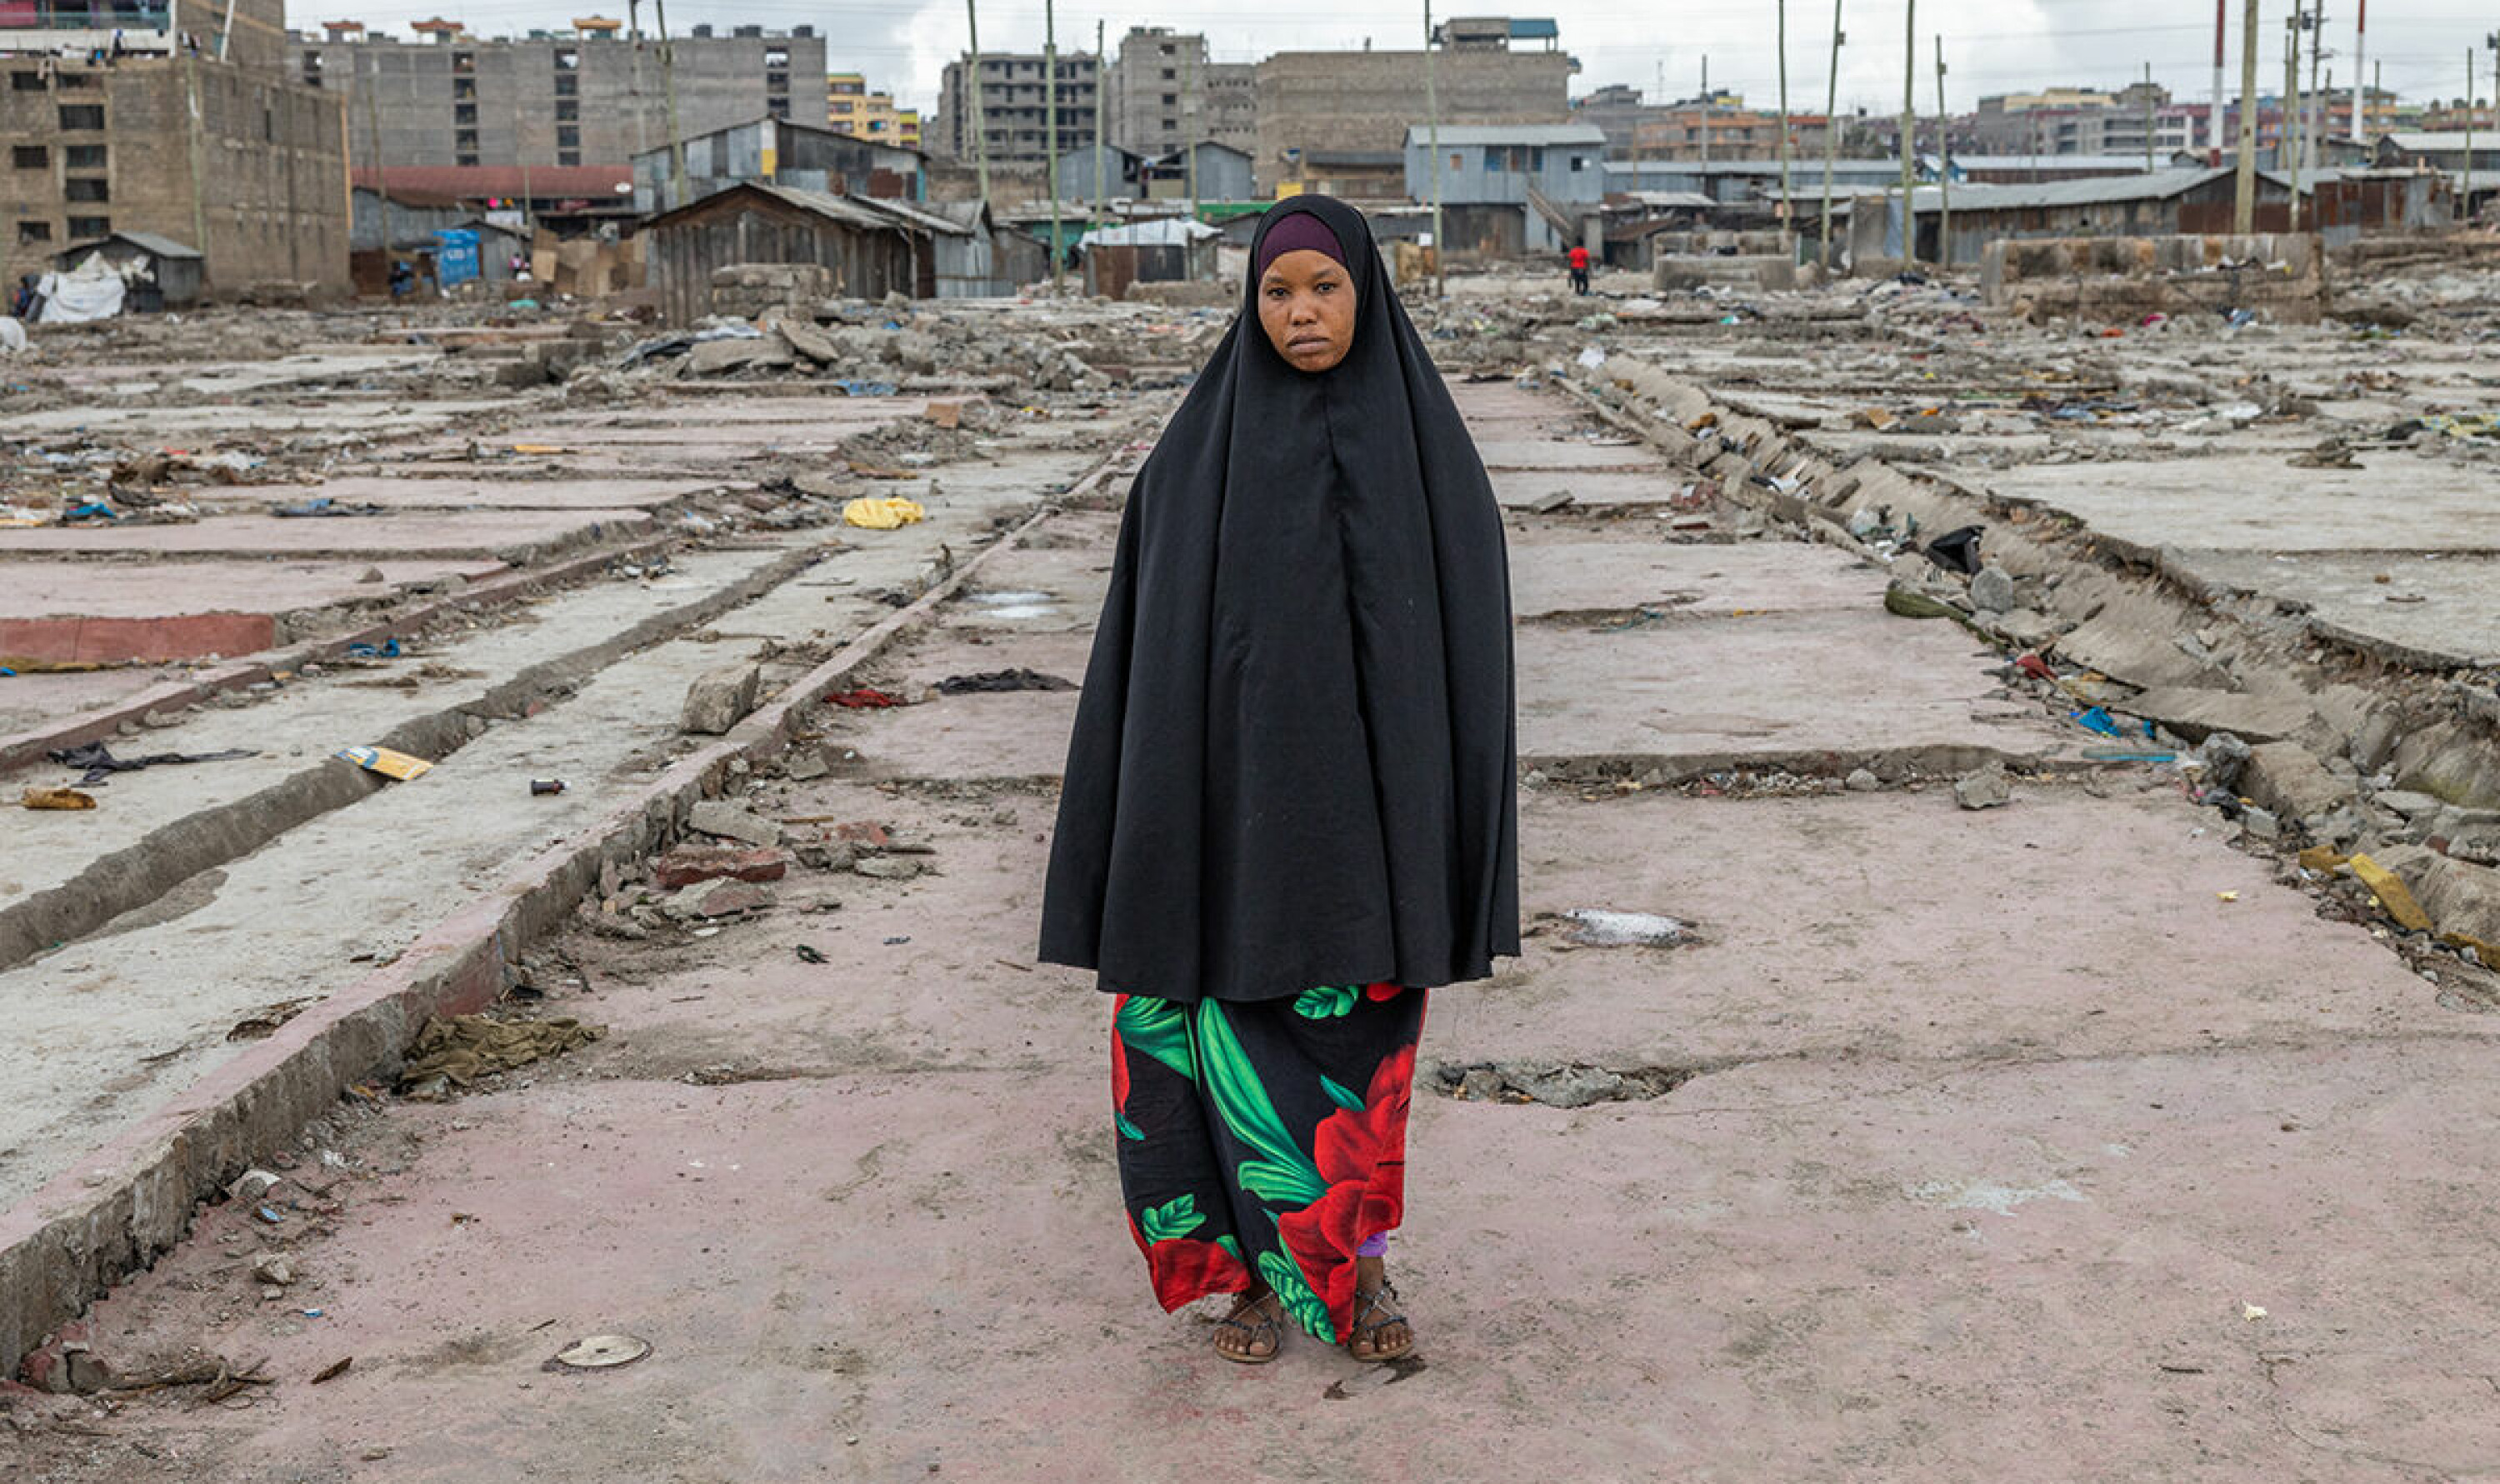 Maryam Yussuf (30) på stedet som har vært familiens hjem det siste tiåret. For et par uker siden vekket gravemaskiner familien grytidlig, mens politiet skal ha beordret folk til å forlate området. – Der sto jeg, med døtrene mine, og så på hvordan huset forsvant, sier hun til Bistandsaktuelt.